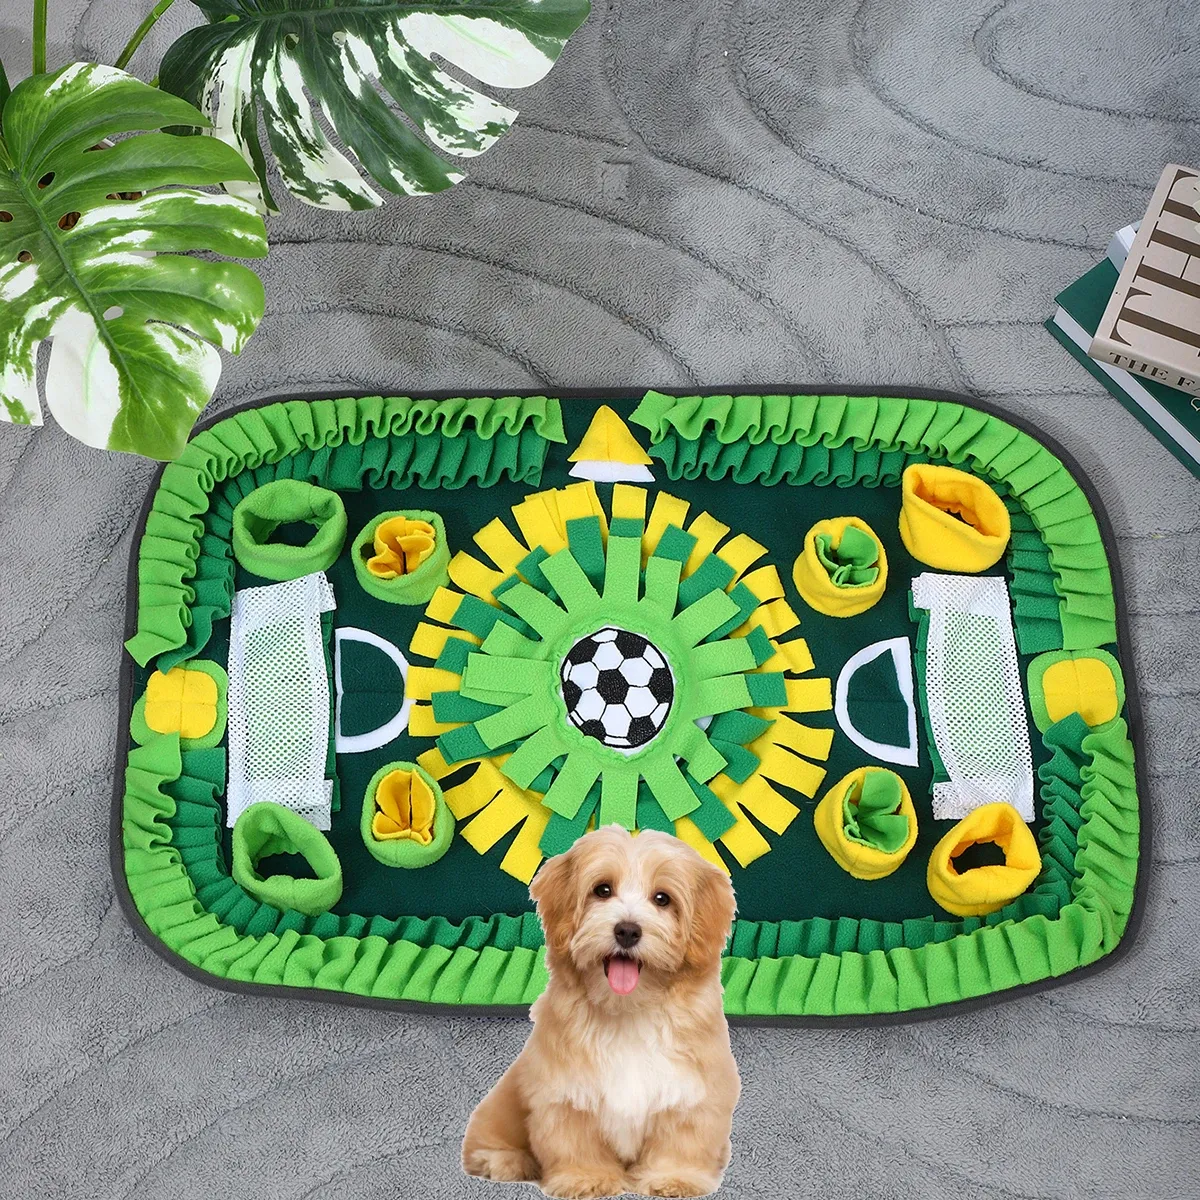 Ausstattung Hundeschnüffelmatte für kleine Hunde.Interaktives Hundespielzeug reduziert Langeweile.Premium-Futtermatte für langsames Essen, Geruchstr